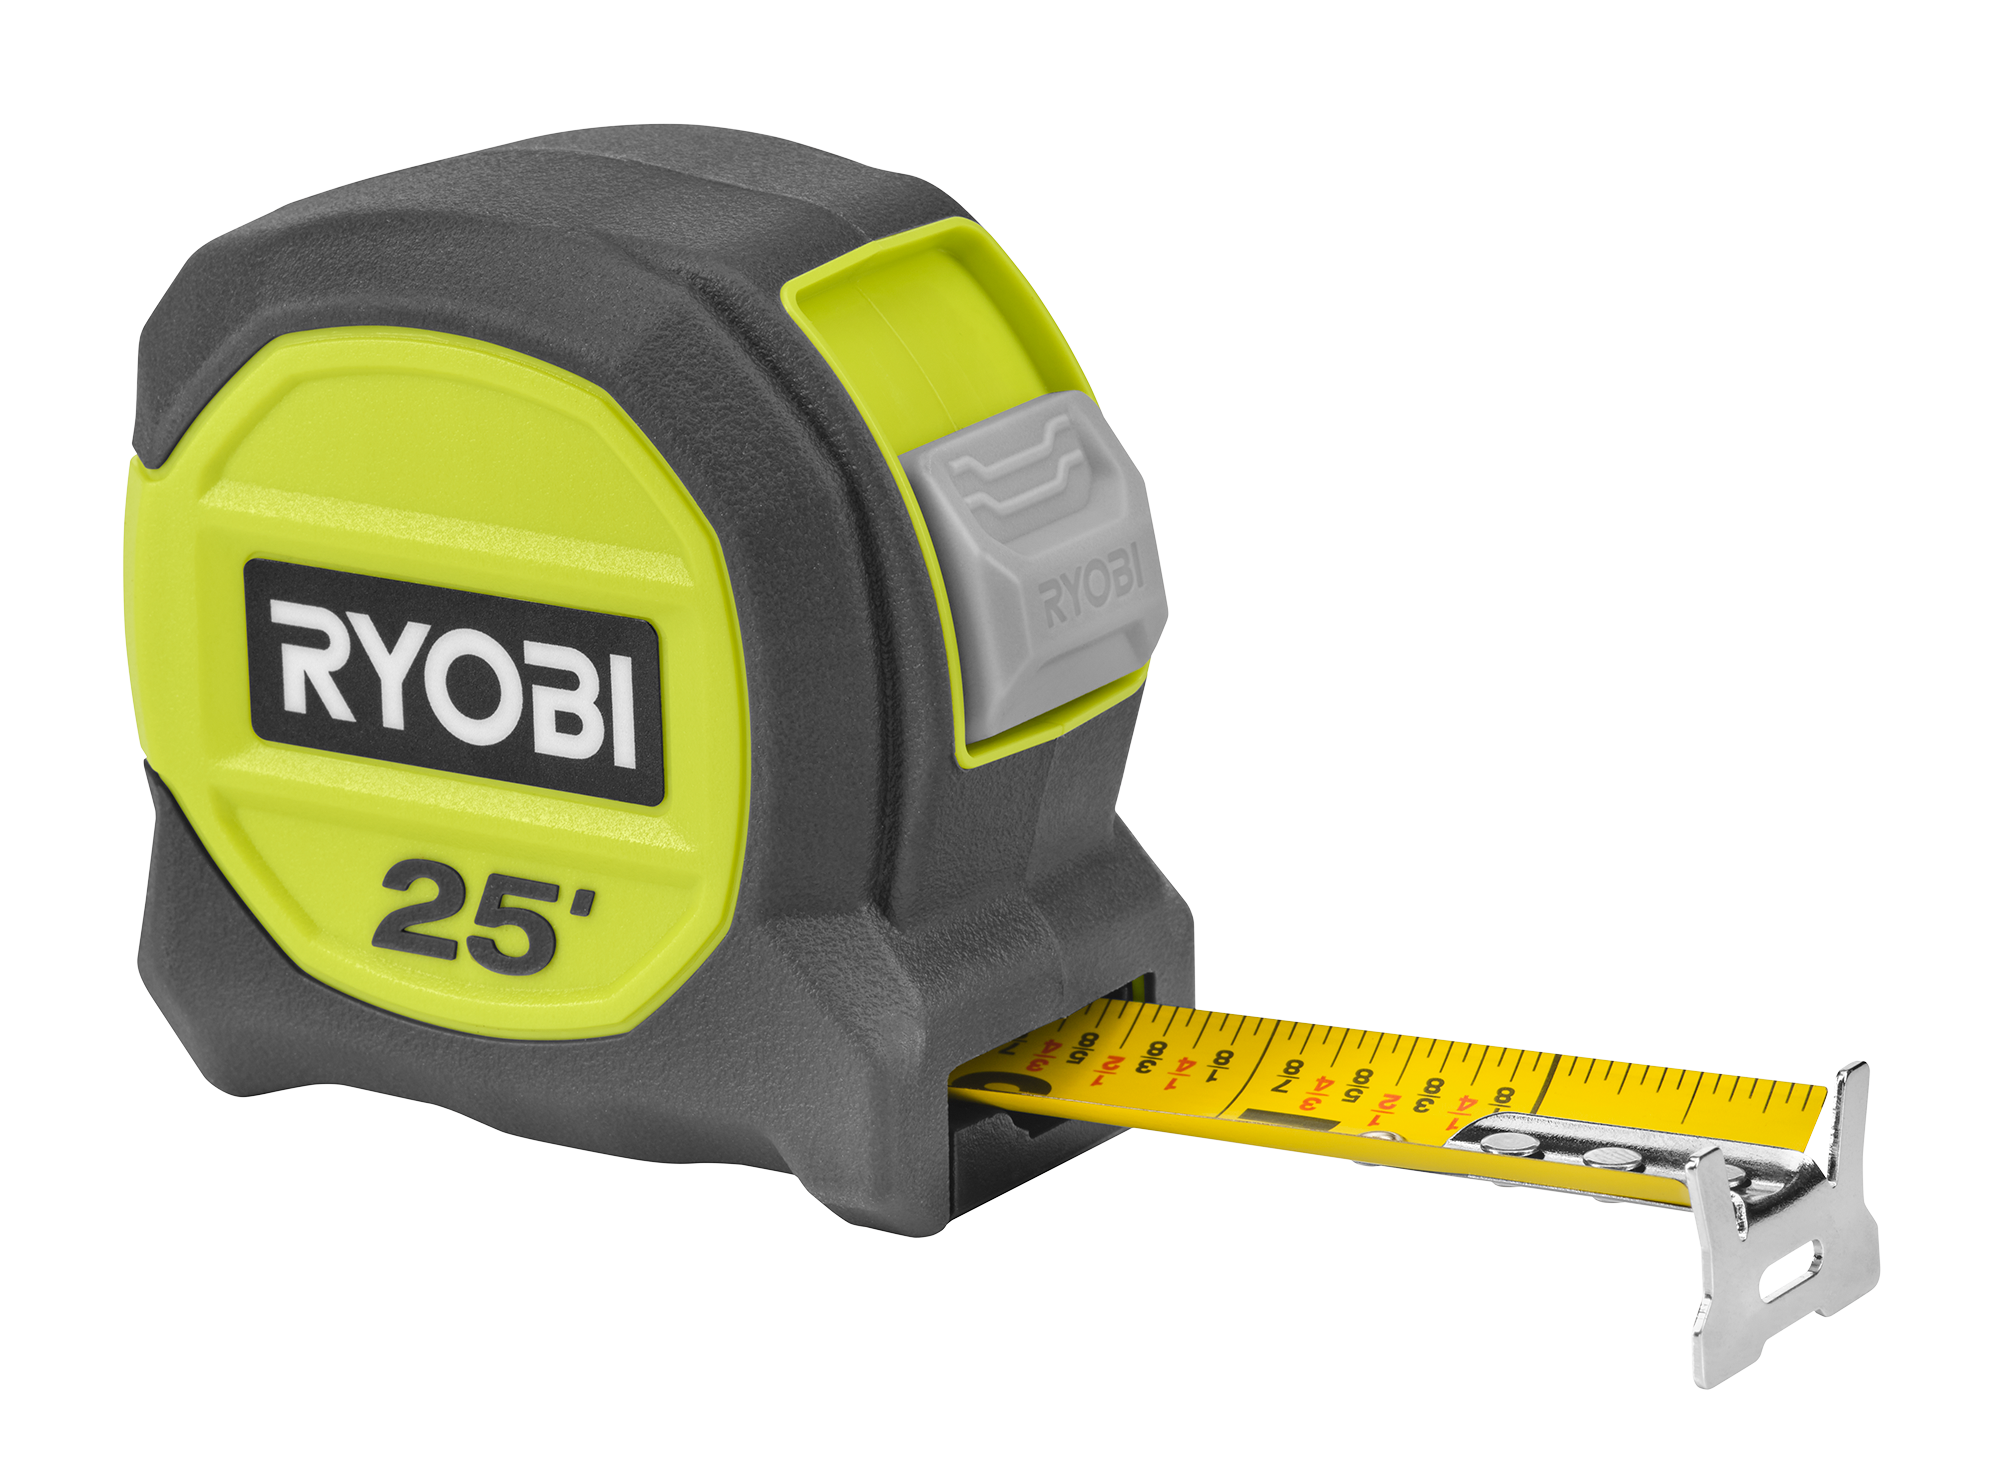 RYOBI A4 Self-Healing Cutting Mat RHCM04 - The Home Depot